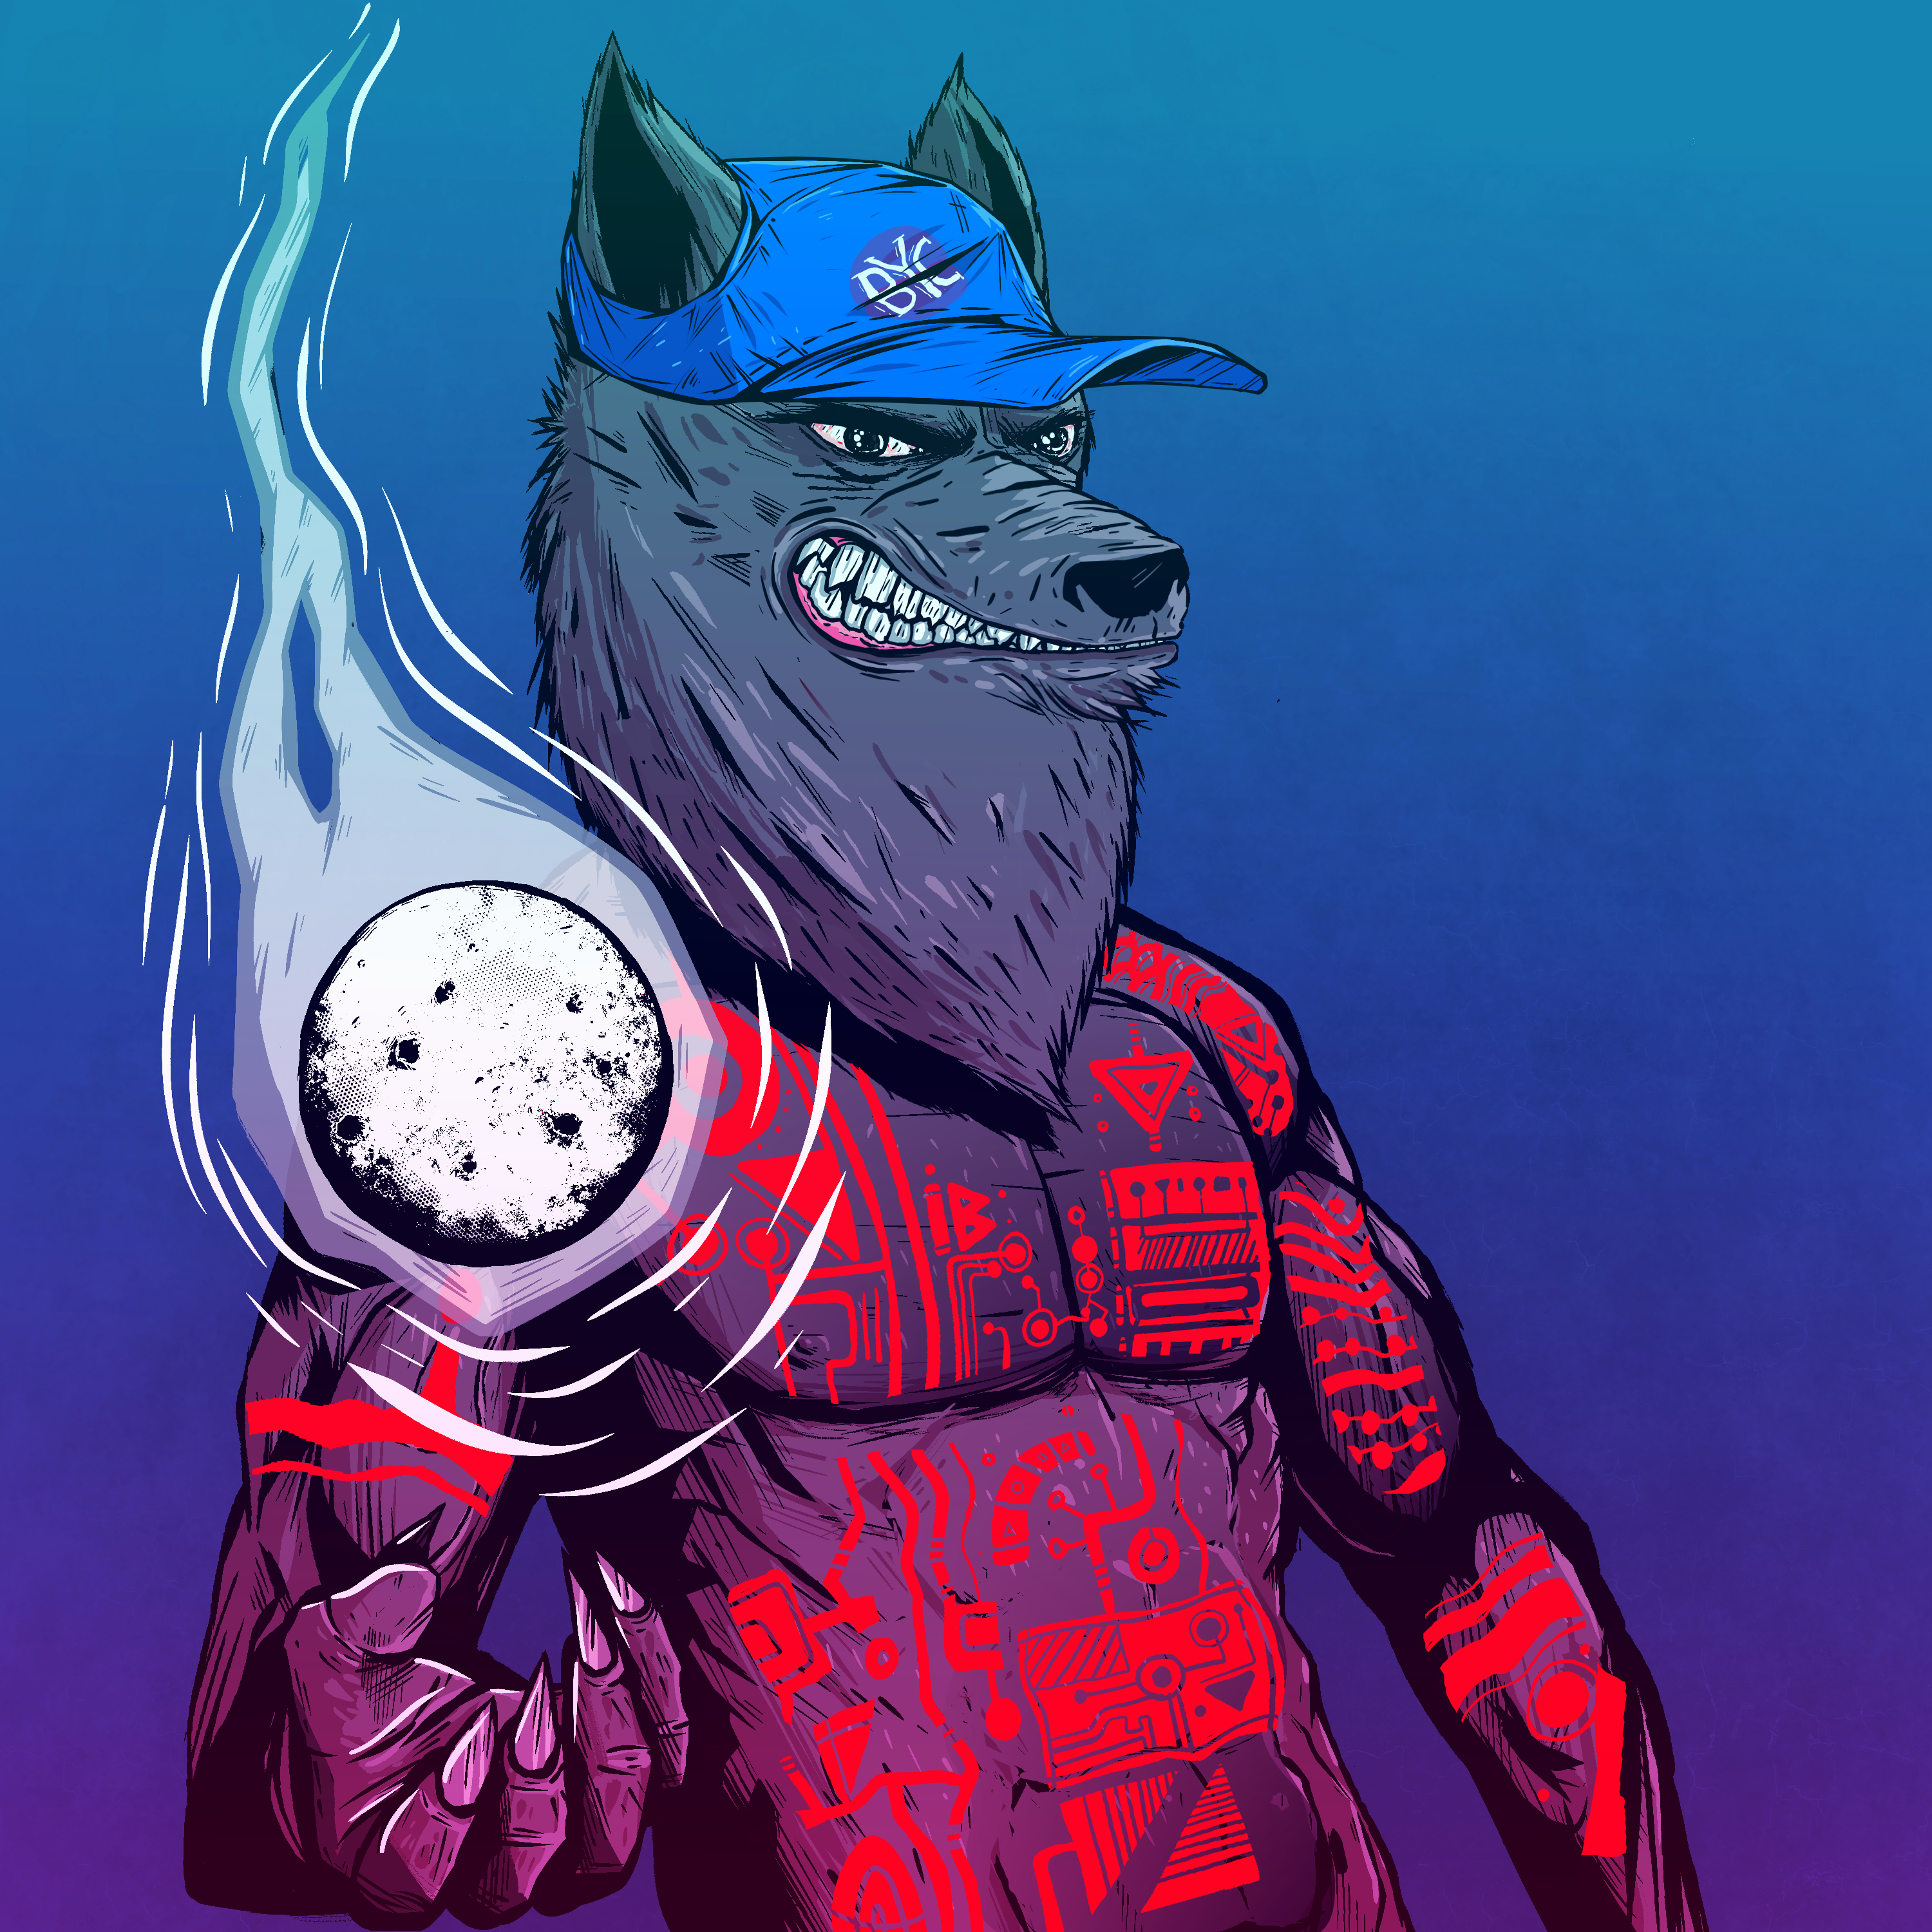 Werewolf #2910 asset